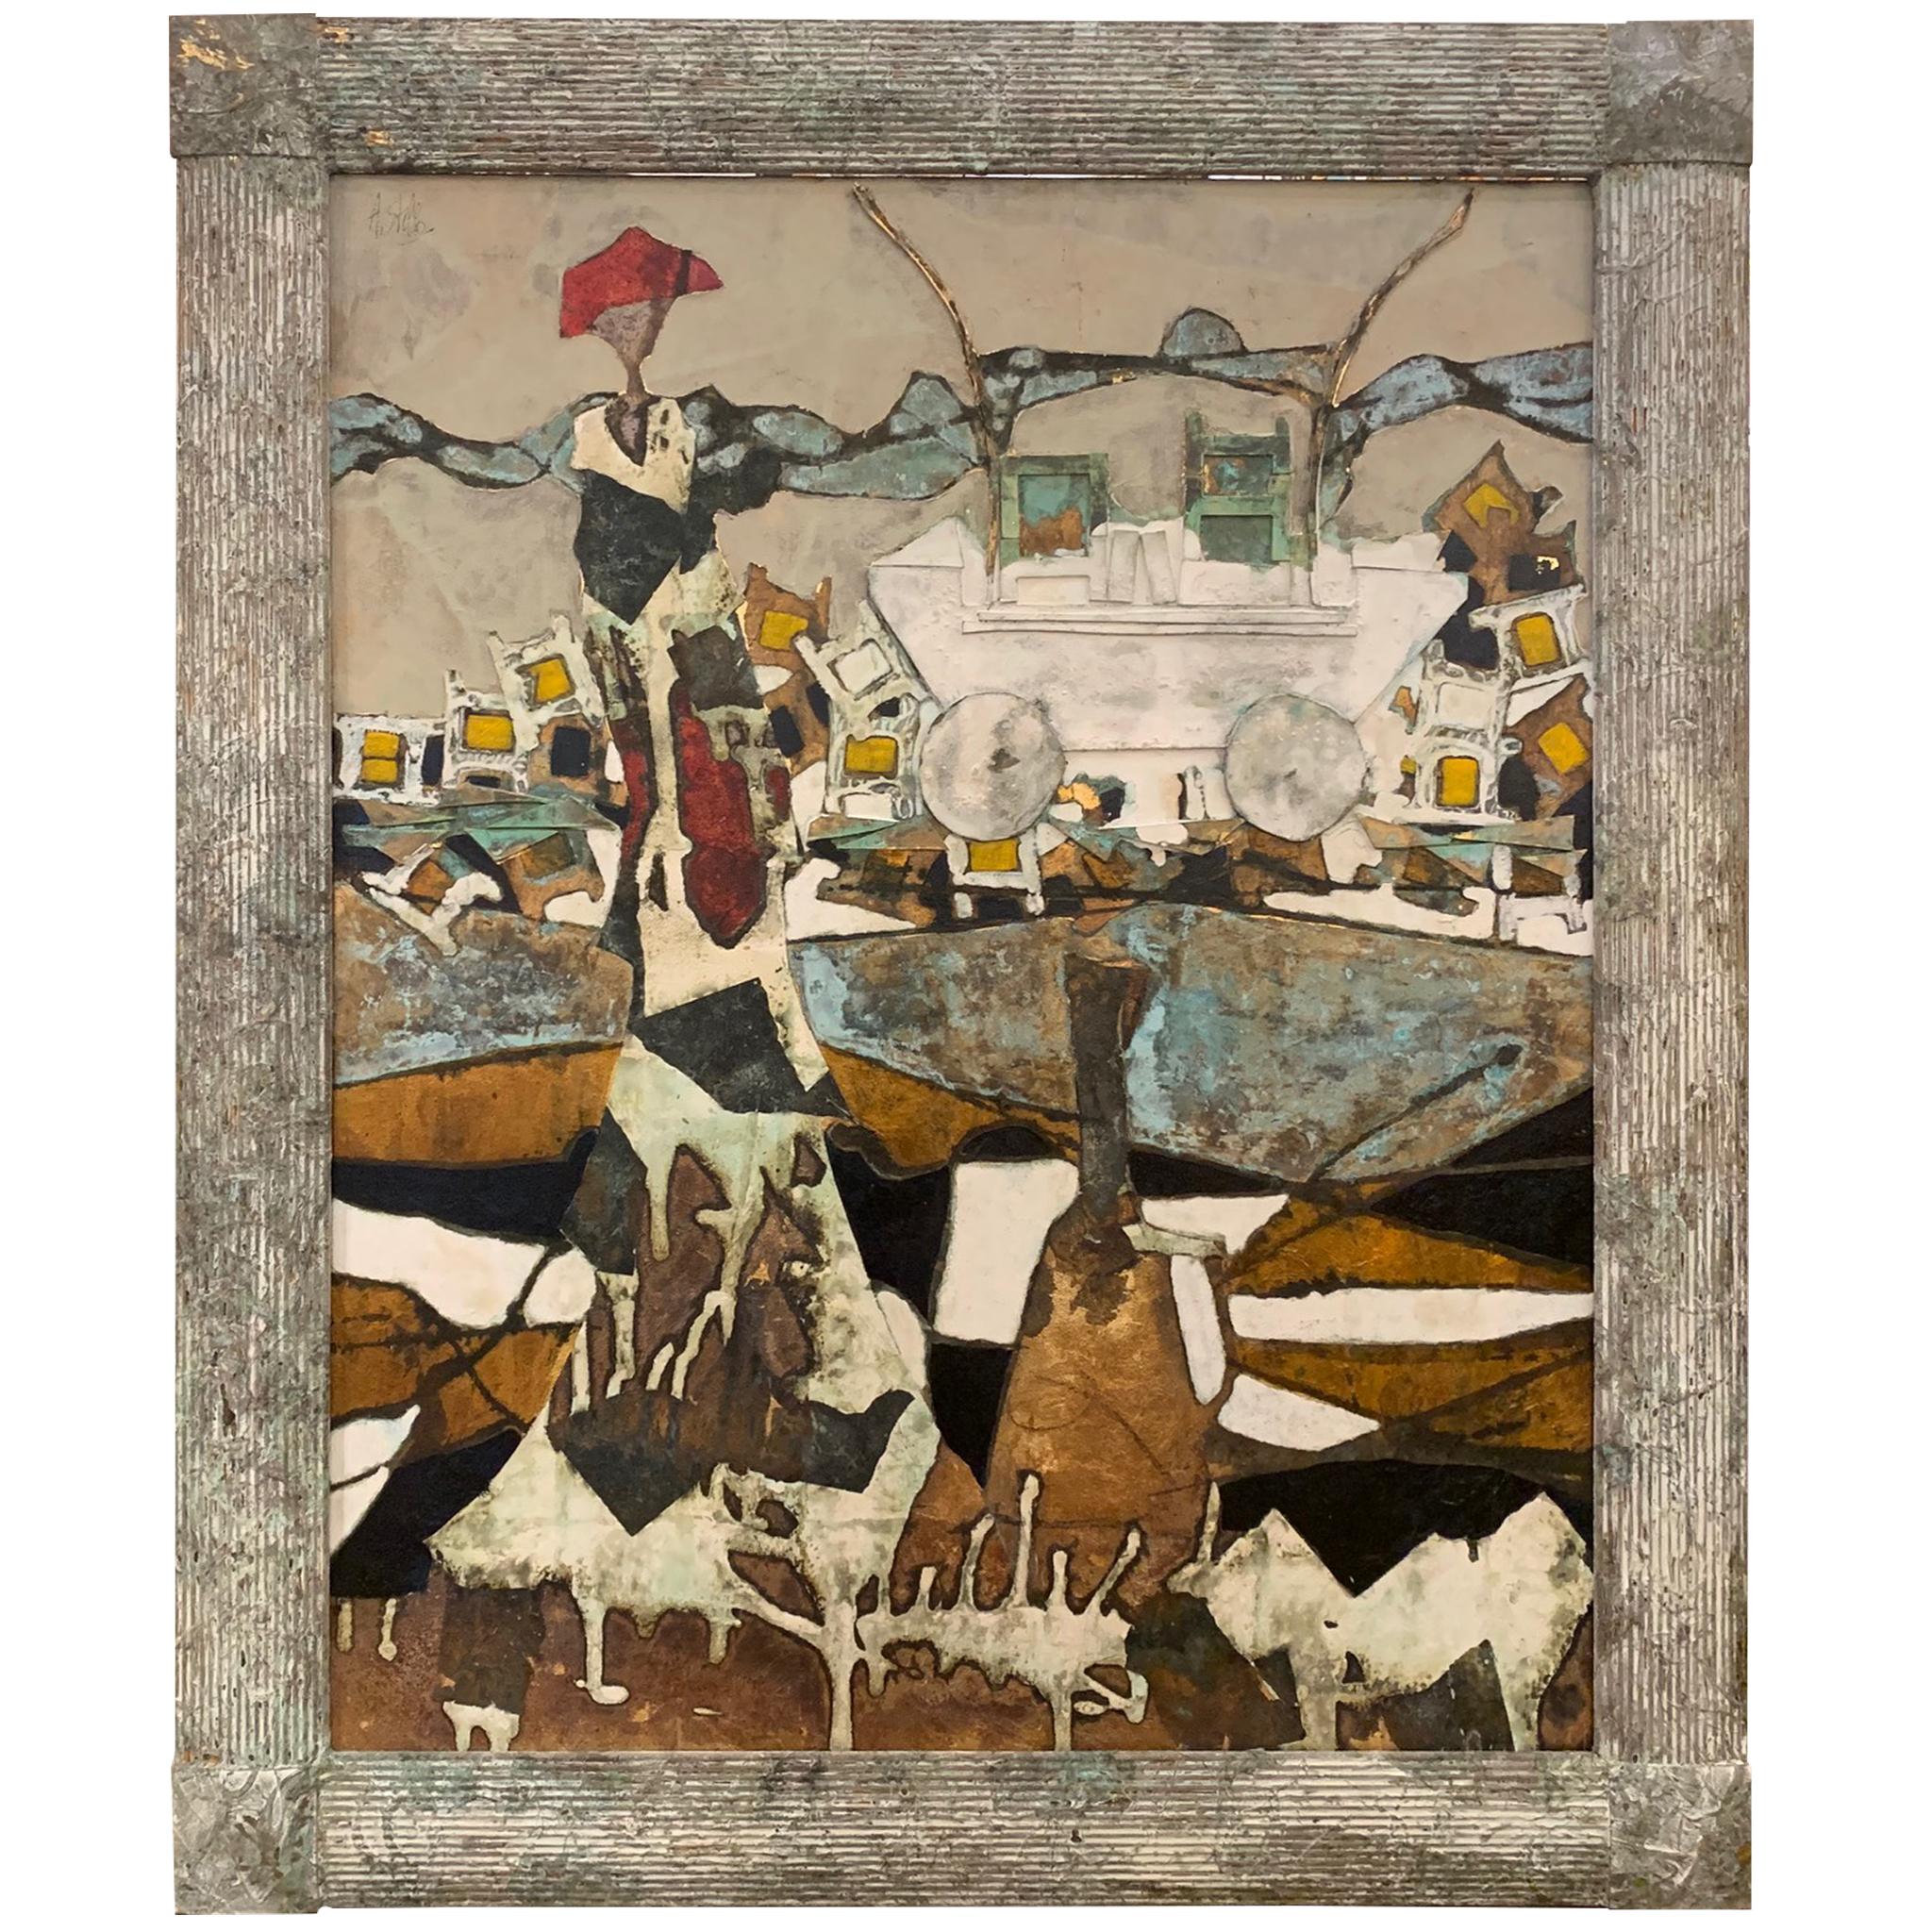 Der Rollwagen der Fantasie –Andrea Stella-Figuratives abstraktes Gemälde – Mixed Media (Zeitgenössisch), Mixed Media Art, von ANDREA STELLA